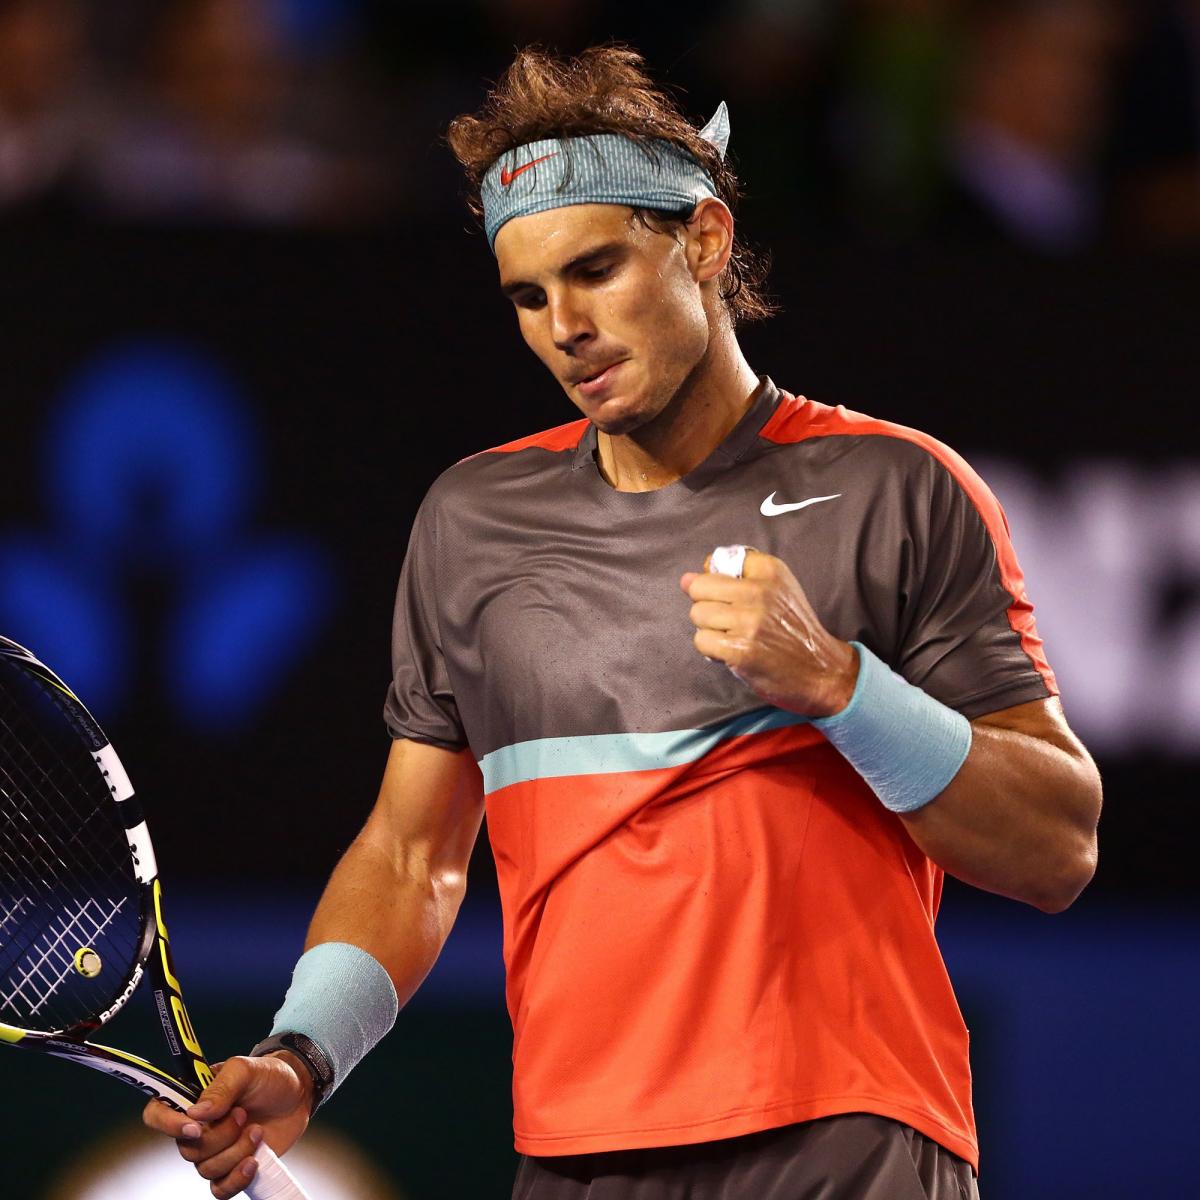 Nadal vs. Wawrinka: What to Watch for in 2014 Australian Open Men's